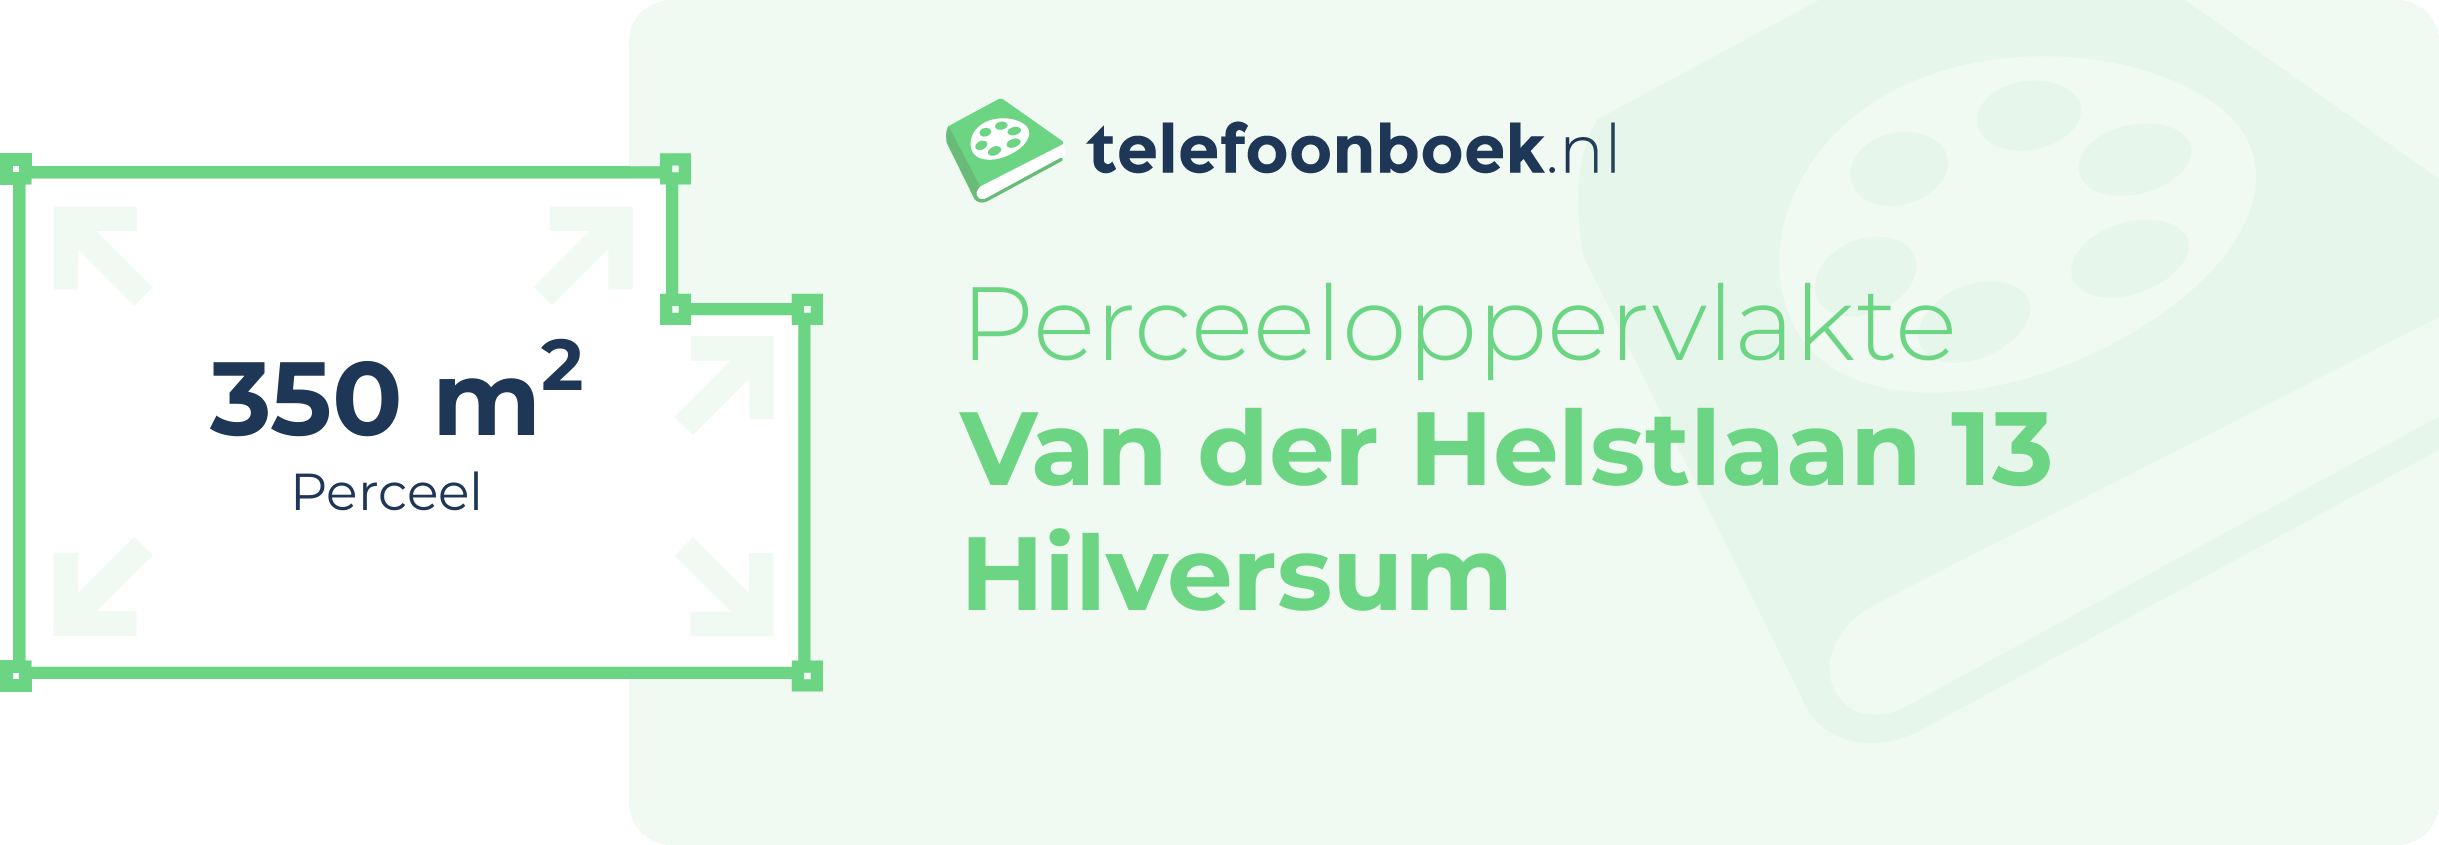 Perceeloppervlakte Van Der Helstlaan 13 Hilversum